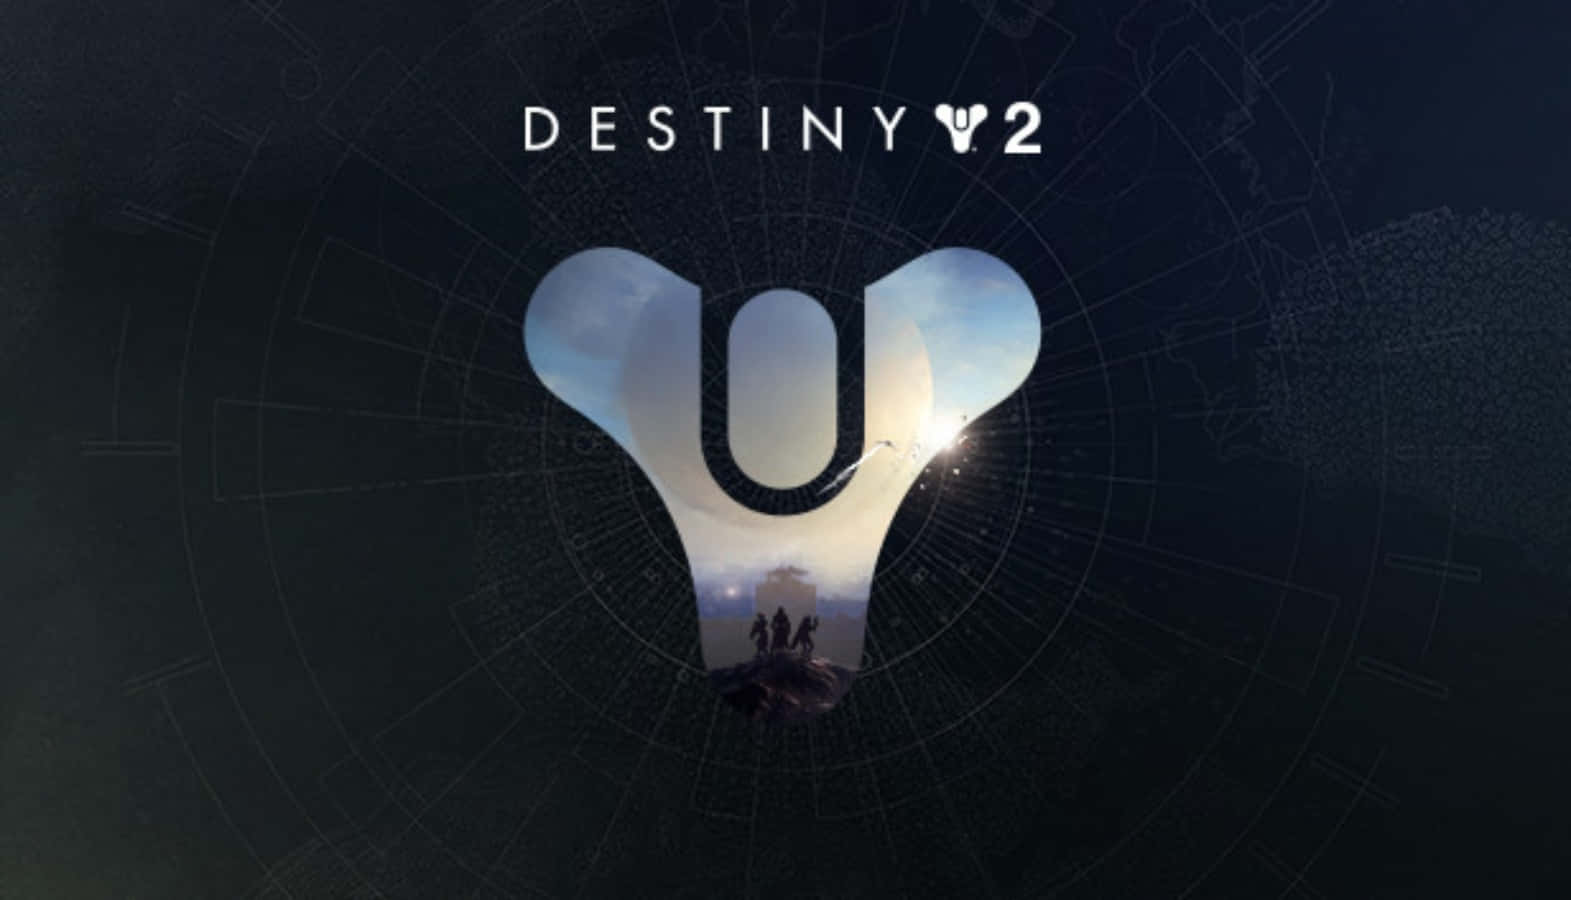 Logotipodel Videojuego Destiny 2 Fondo de pantalla